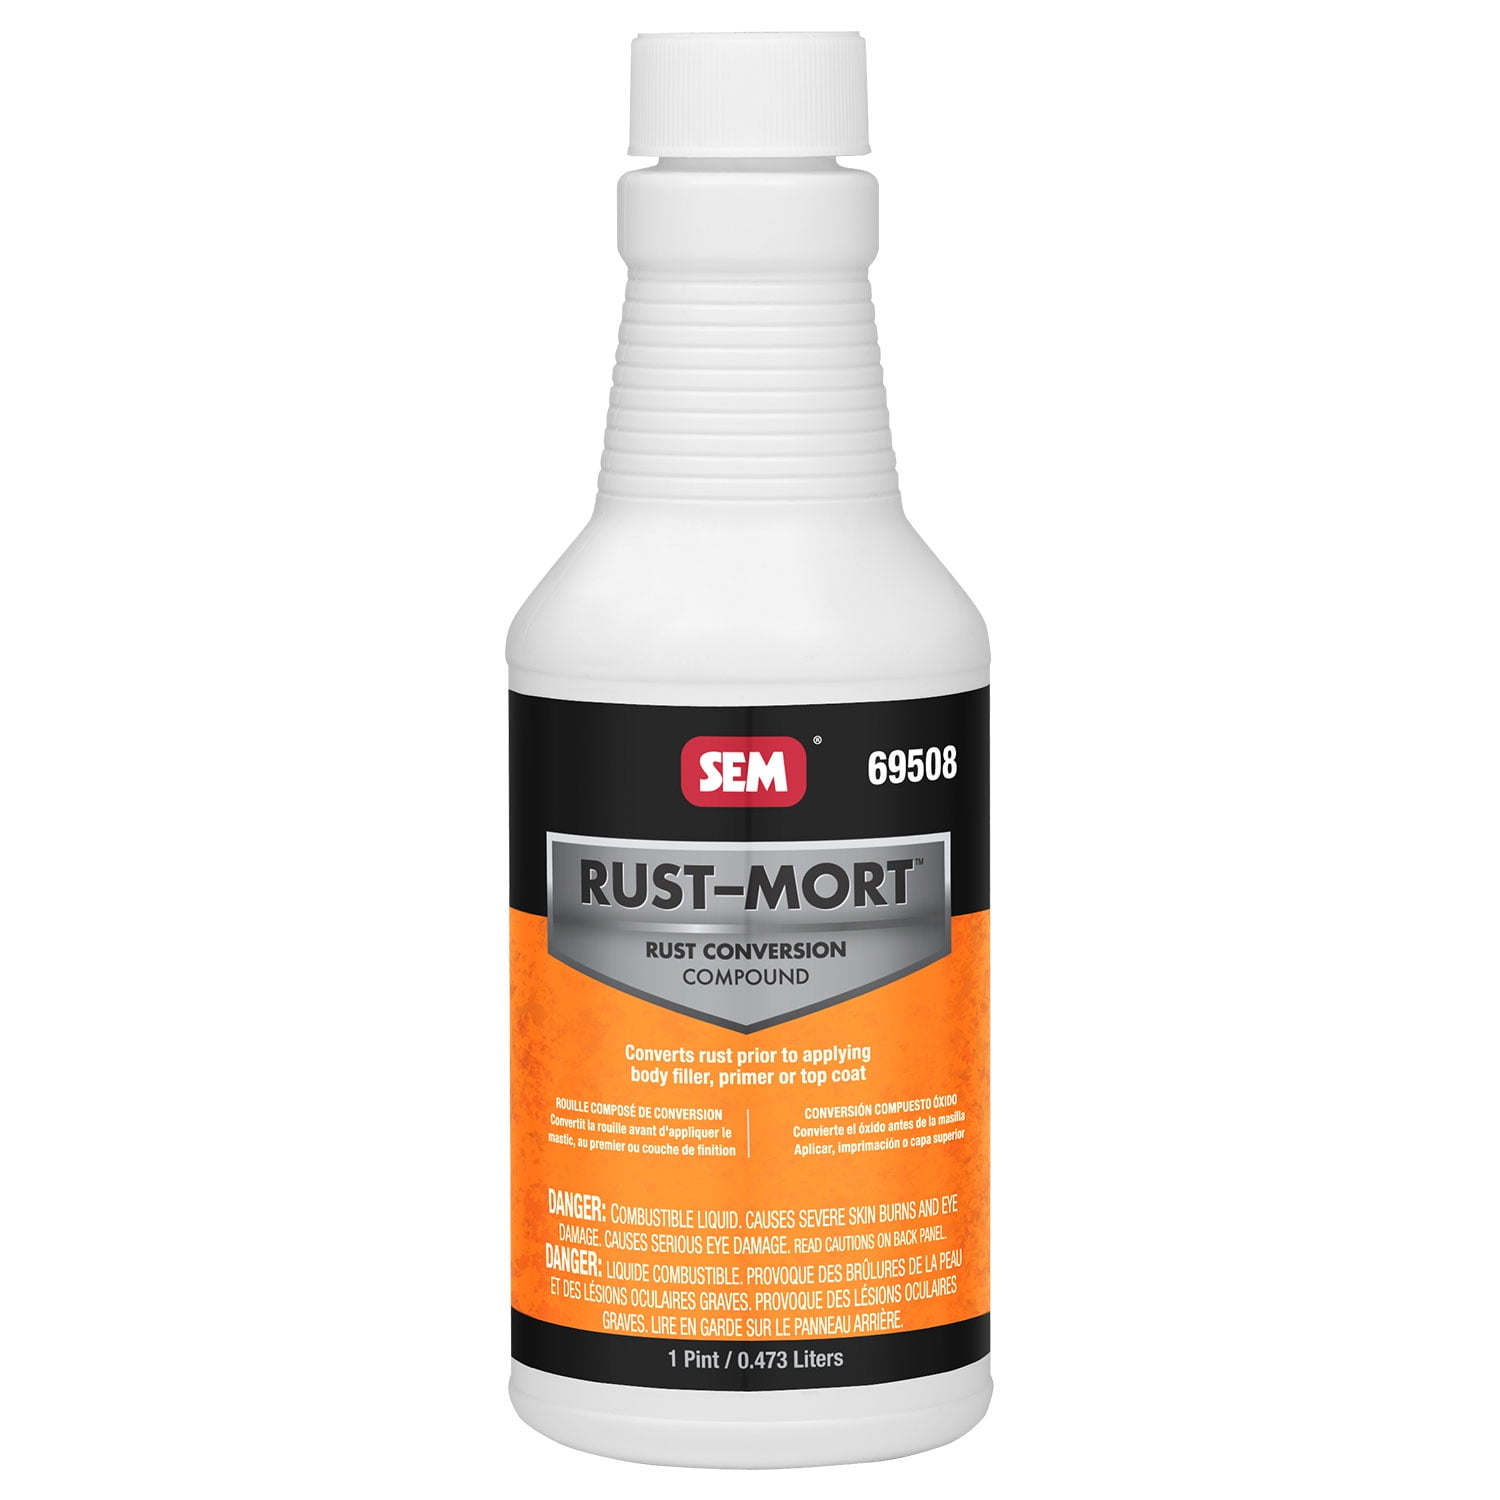  Clear Coat 2K Acrylic Urethane, SMR-1150/1102-Q 4:1